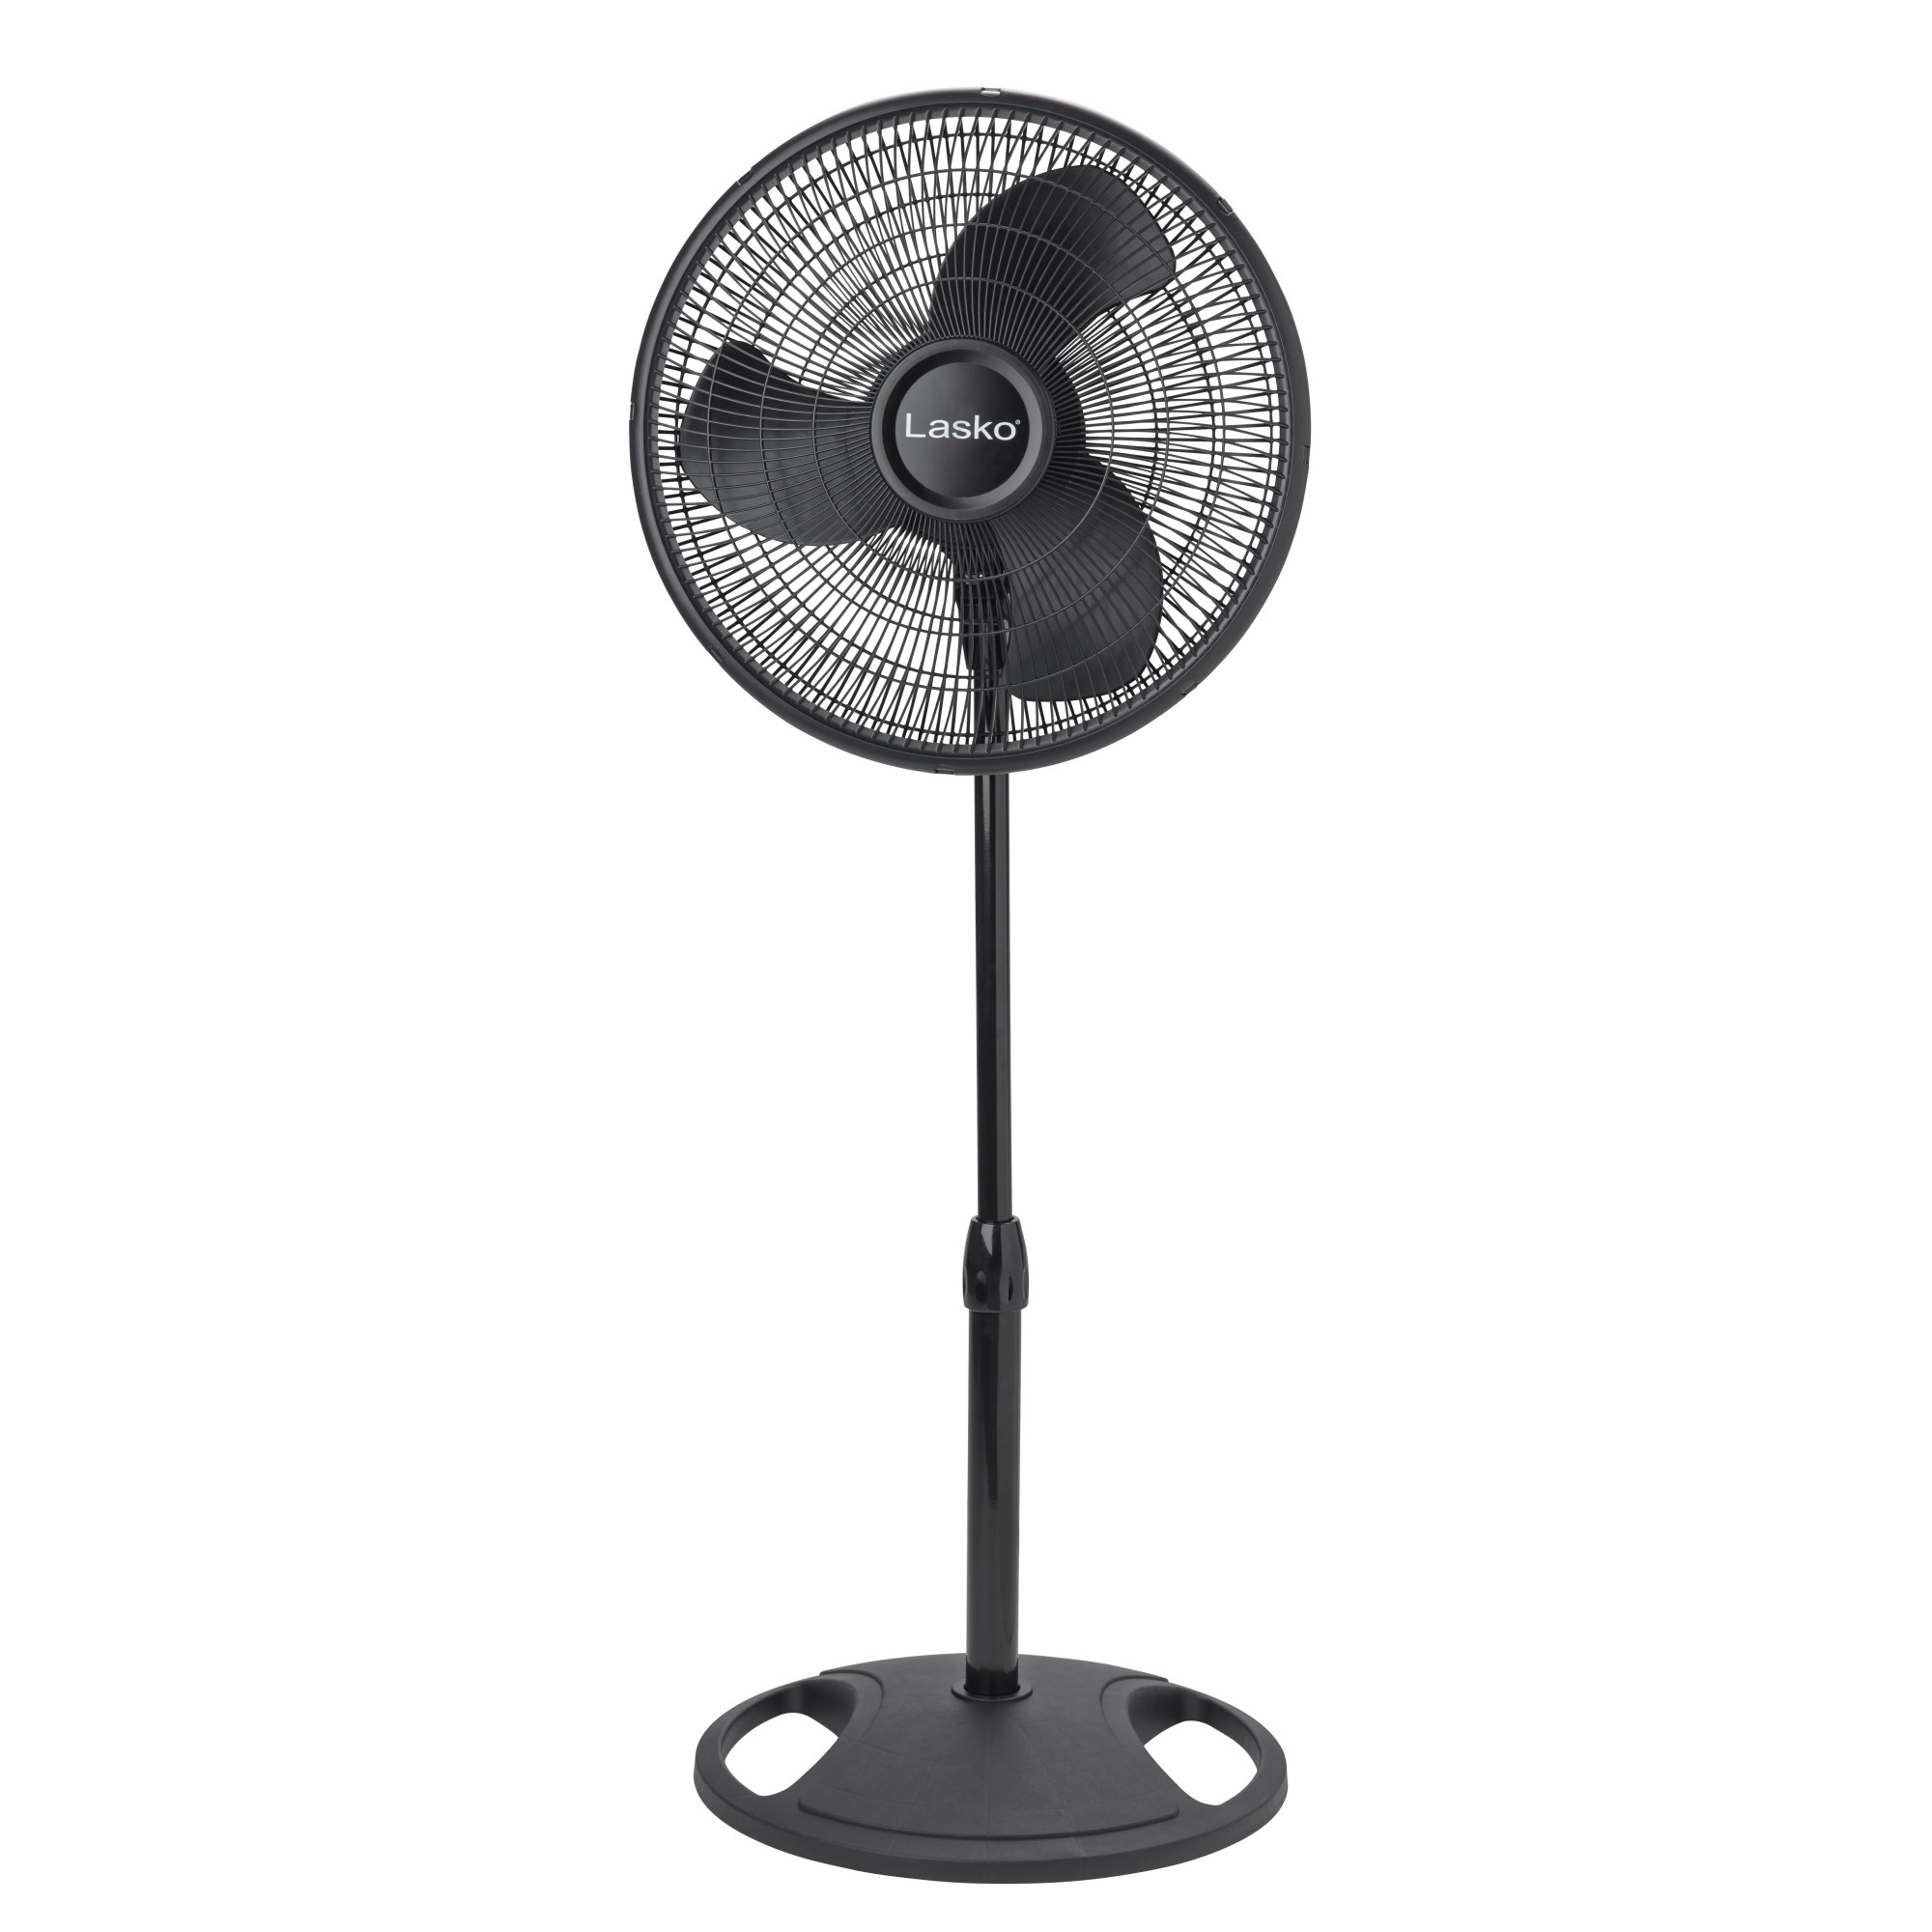 Lasko 16" Oscillating Adjustable Pedestal Fan with 3-Speeds, 47" H, Black, S16500, New - image 8 of 12